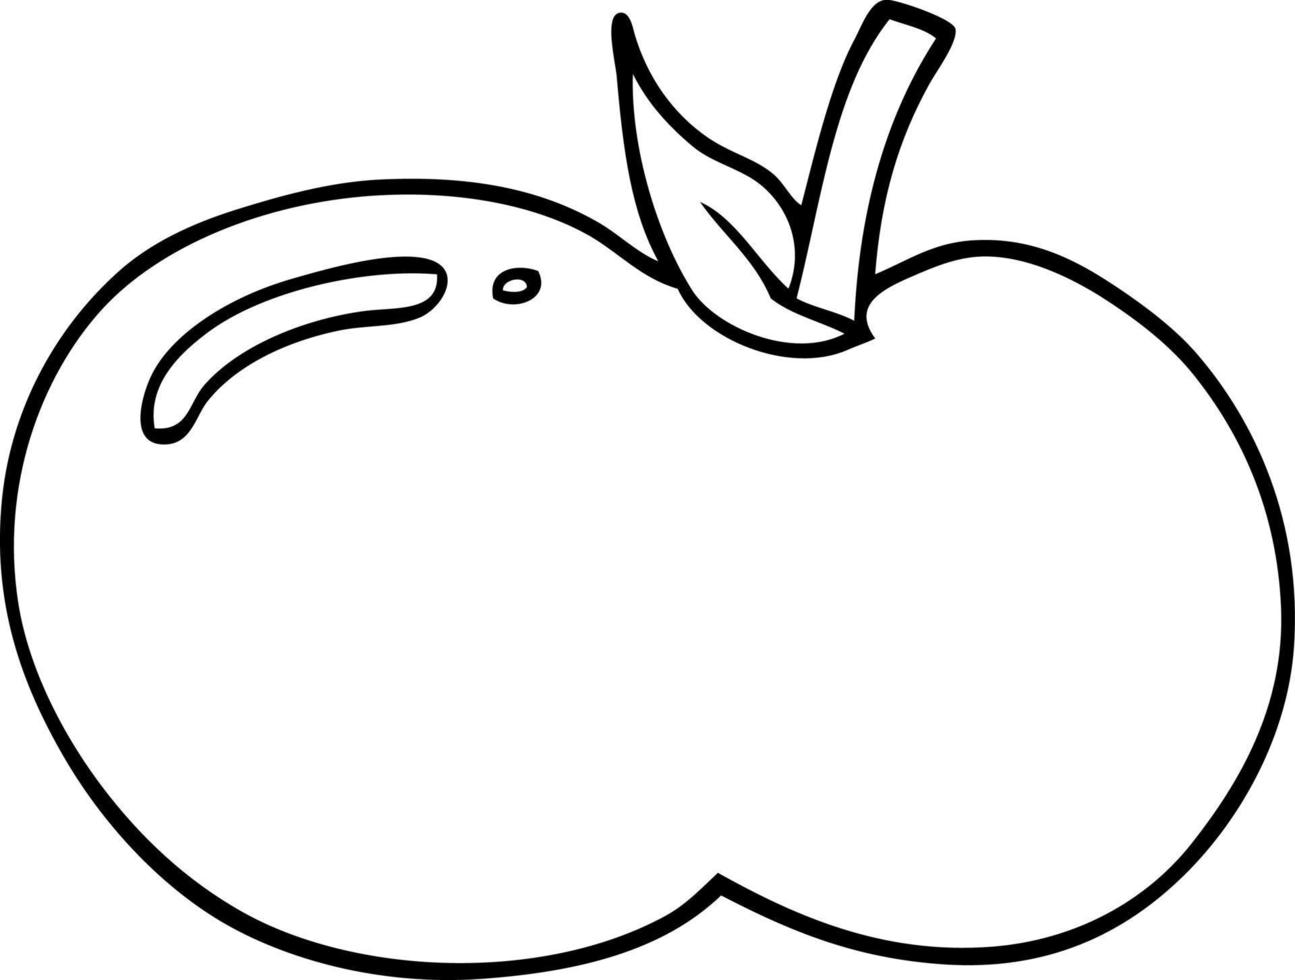 lijntekening cartoon appel vector